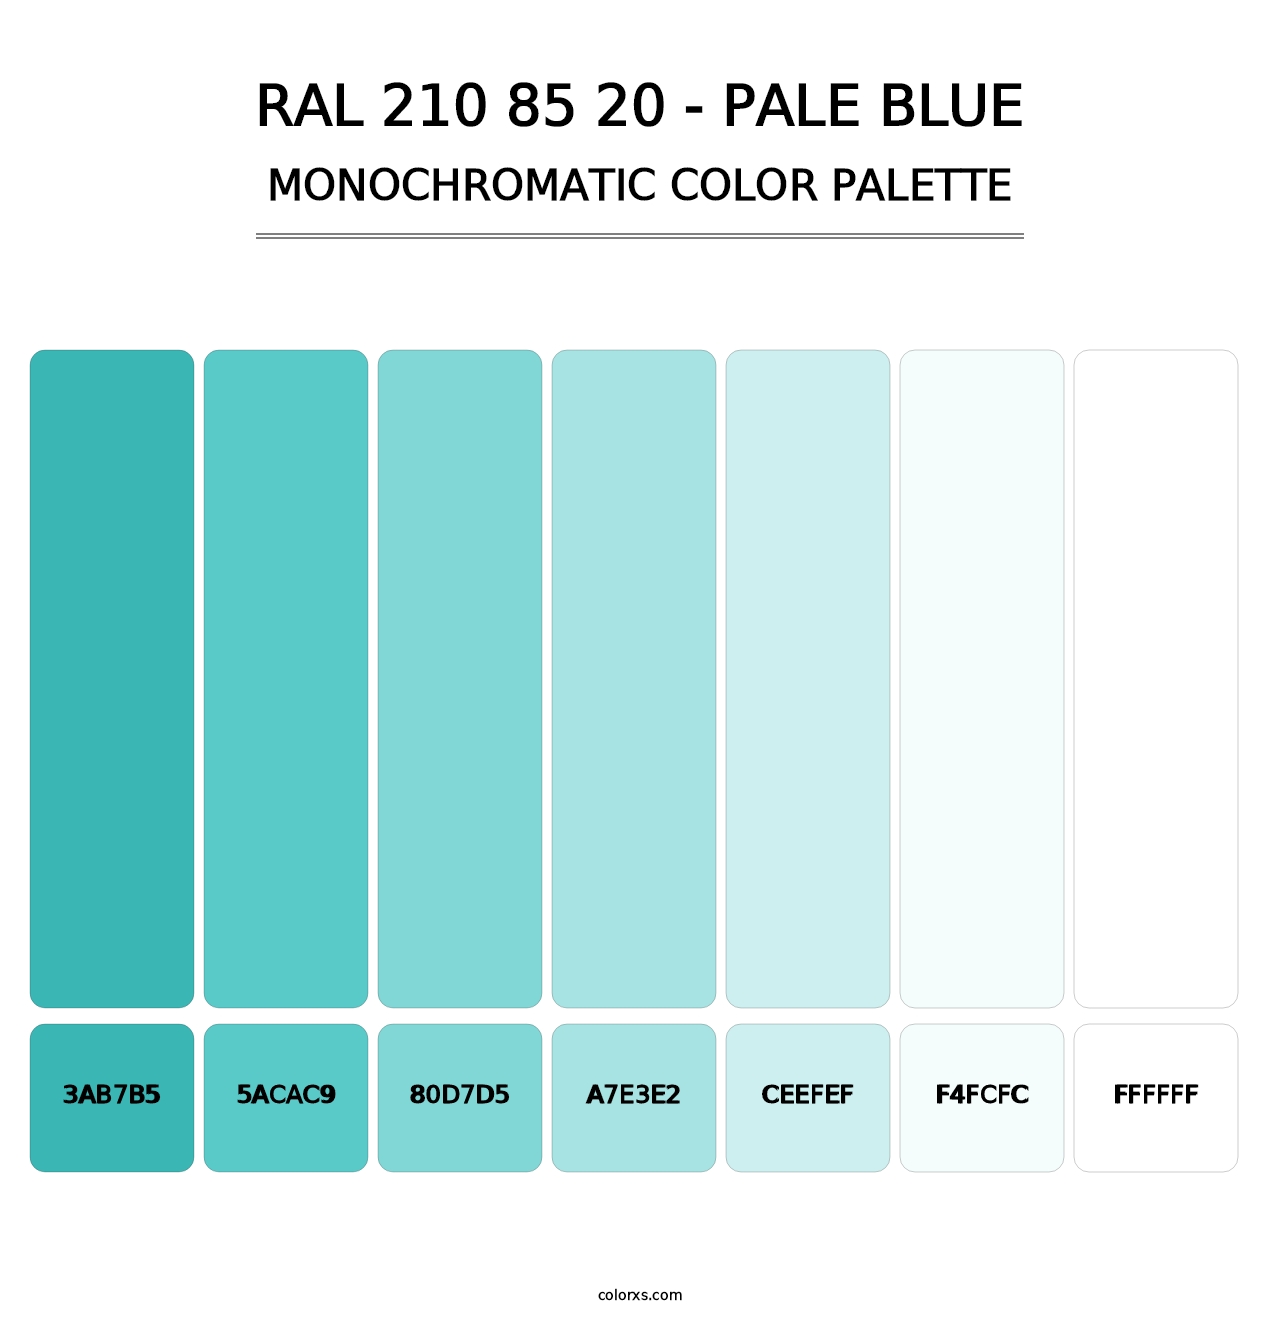 RAL 210 85 20 - Pale Blue - Monochromatic Color Palette